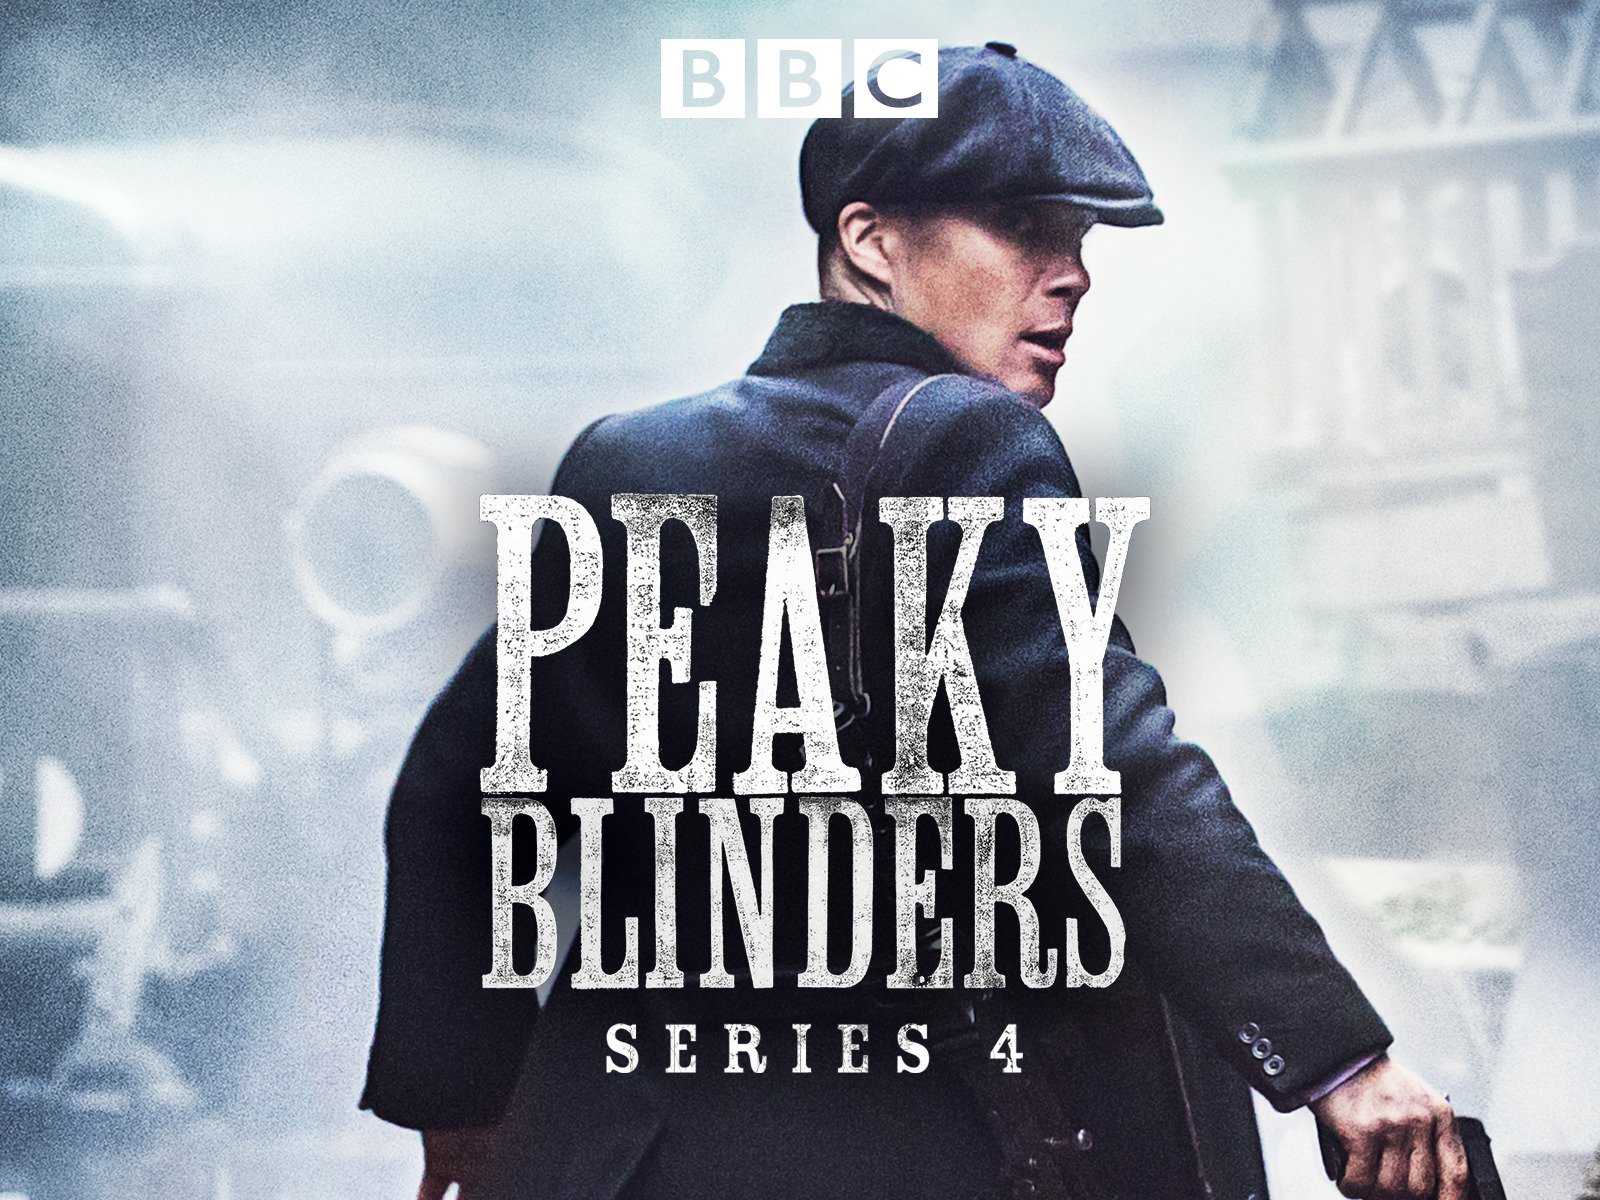 peaky blinders season 4 watch